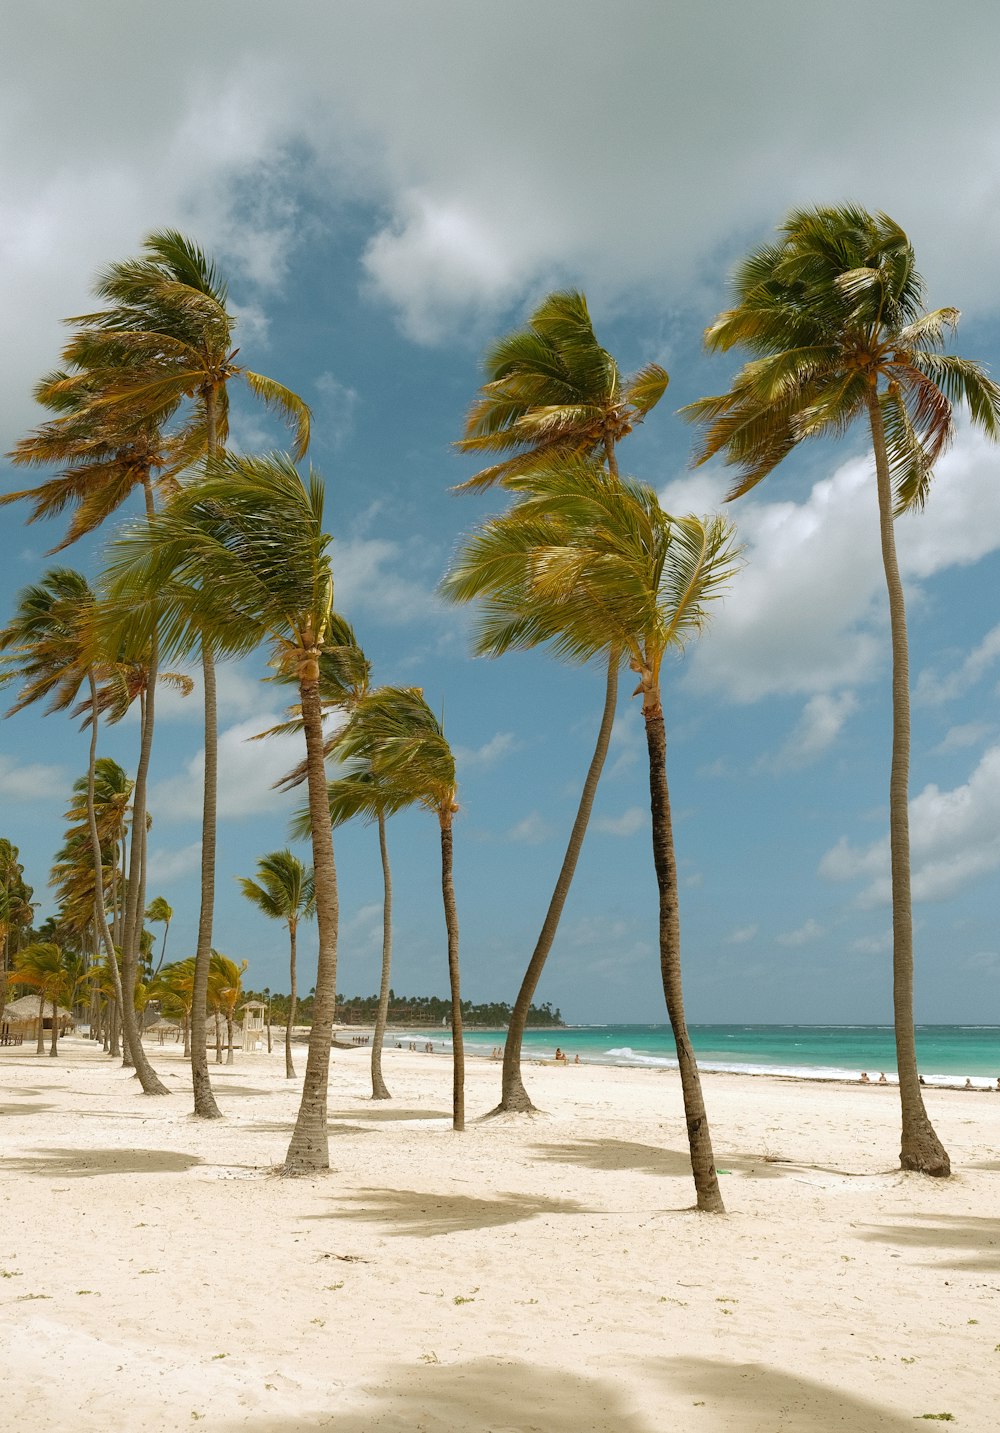 palmeras soplando en el viento en una playa